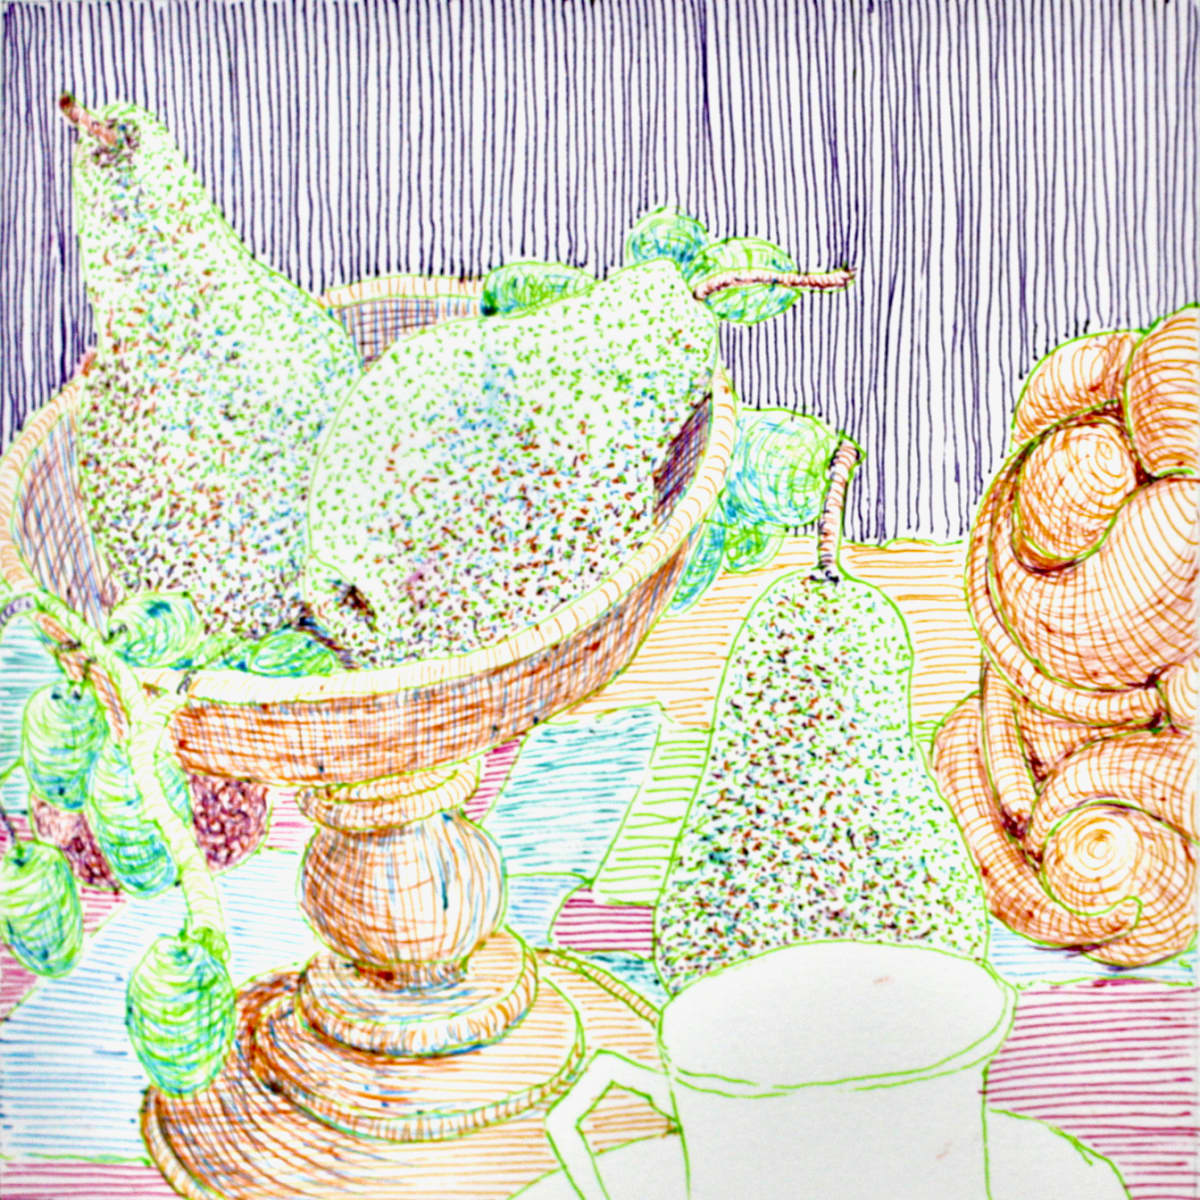 Tea Time/l'heure du thé by Karen Blanchet 